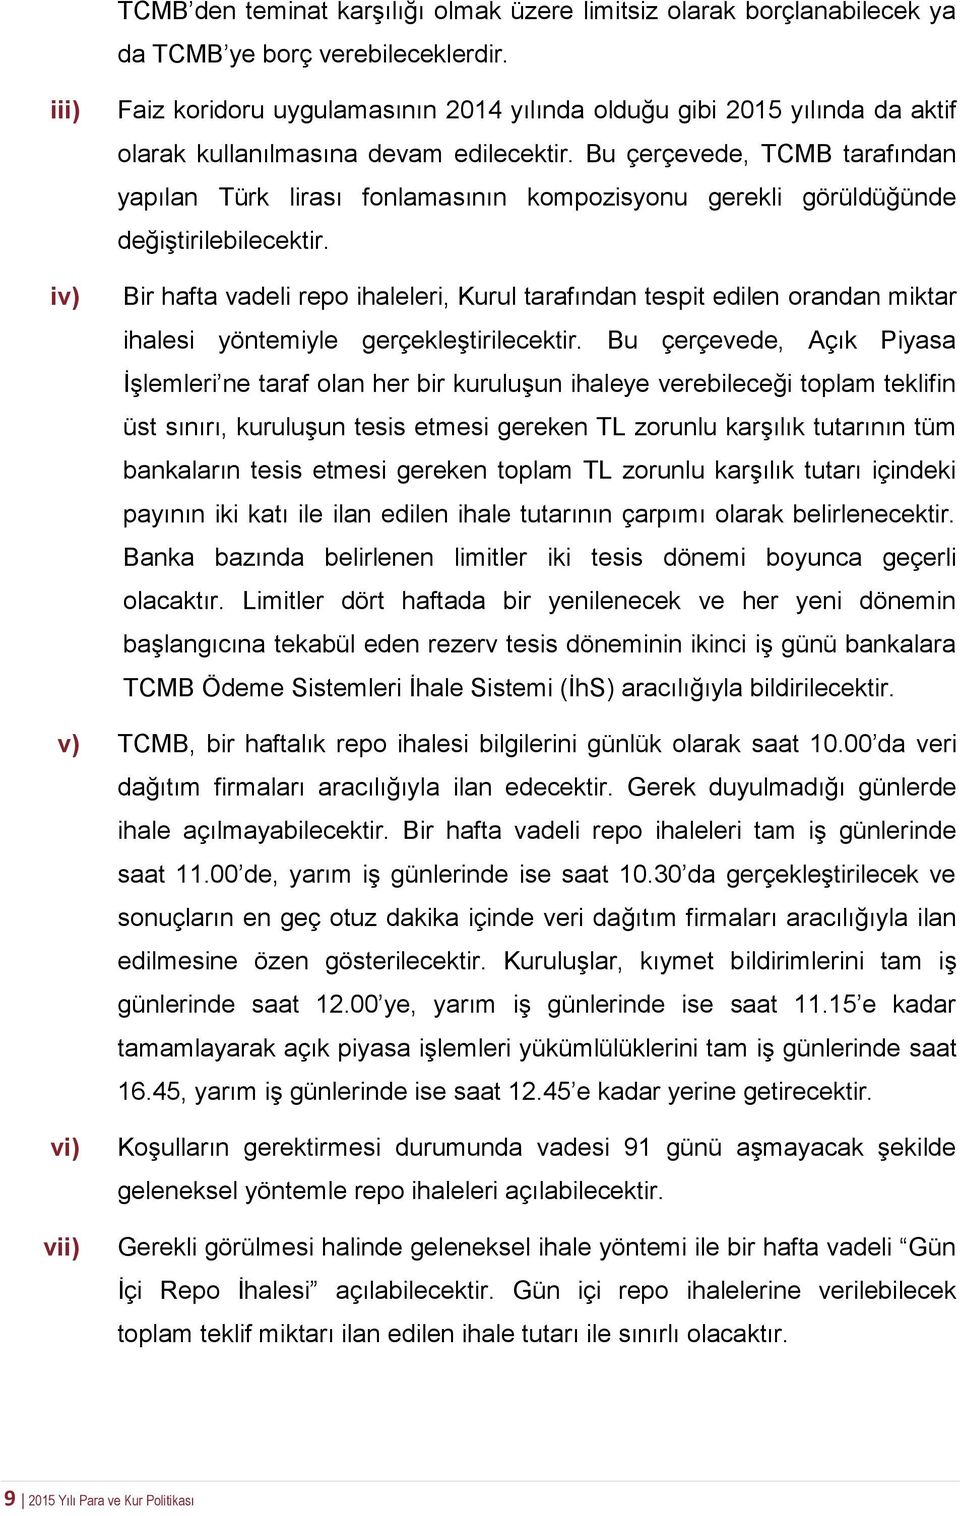 Bu çerçevede, TCMB tarafından yapılan Türk lirası fonlamasının kompozisyonu gerekli görüldüğünde değiştirilebilecektir.